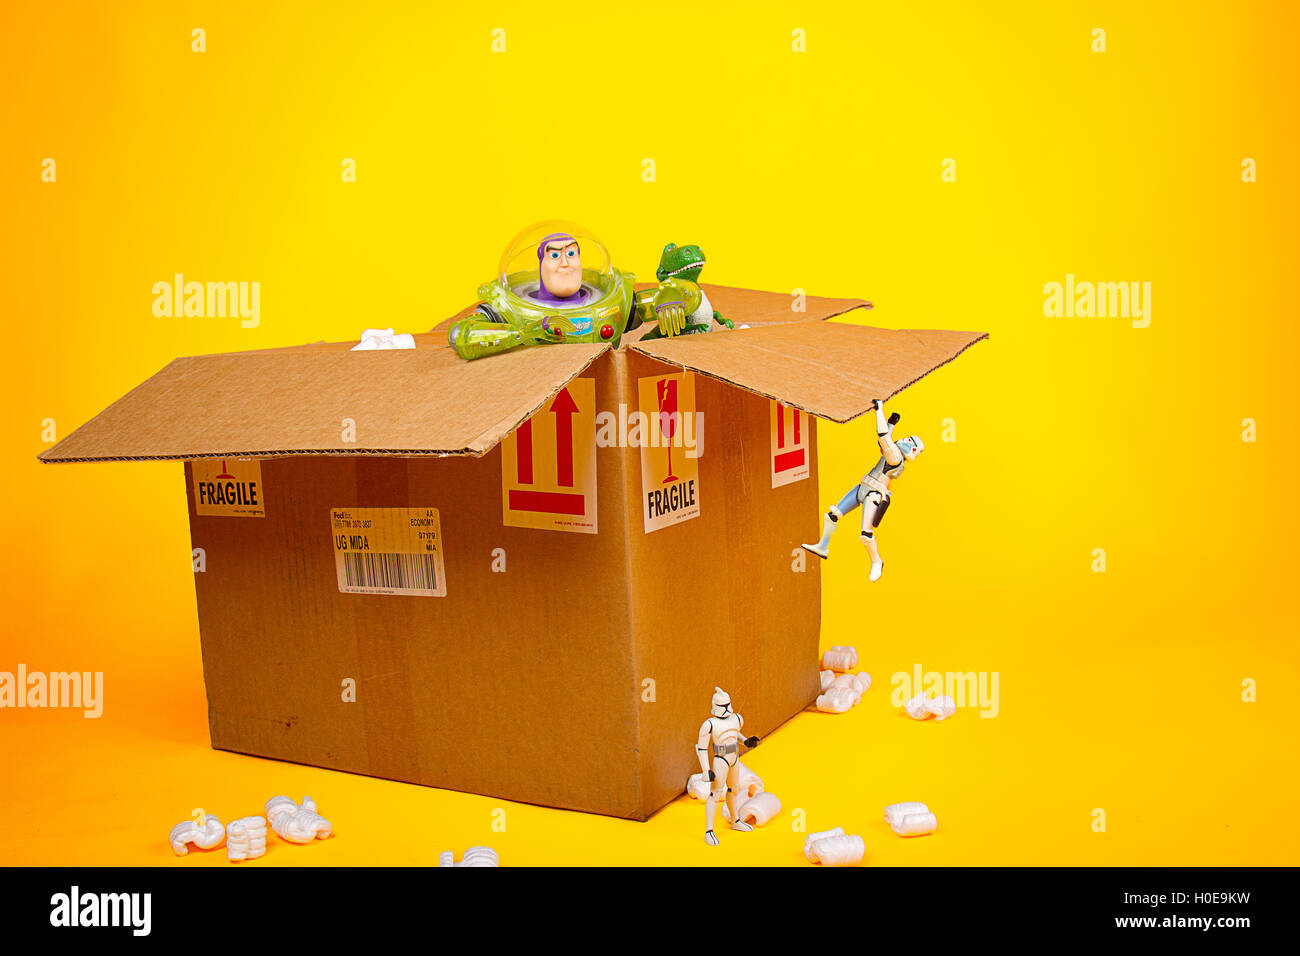 Una escena humorística de juguetes (Starwars y toy story caracteres) unboxing de un paquete de verificación aislada en un fondo amarillo. Foto de stock